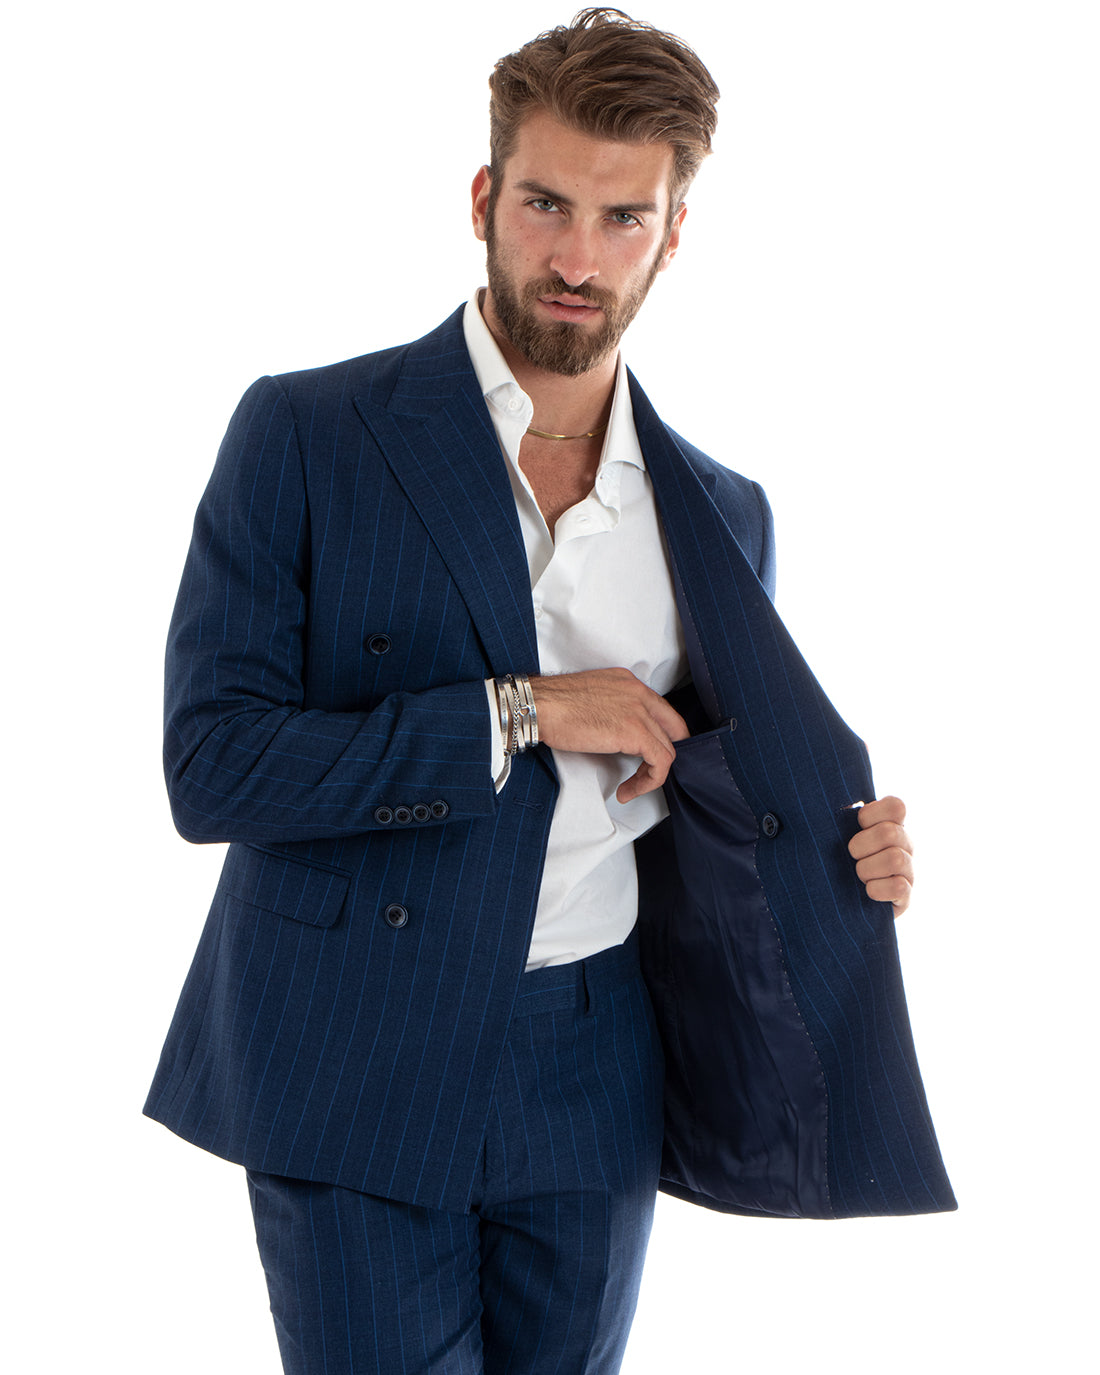 Abito Uomo Doppiopetto Vestito Completo Giacca Pantaloni Blu Gessato Elegante Casual GIOSAL-OU2404A